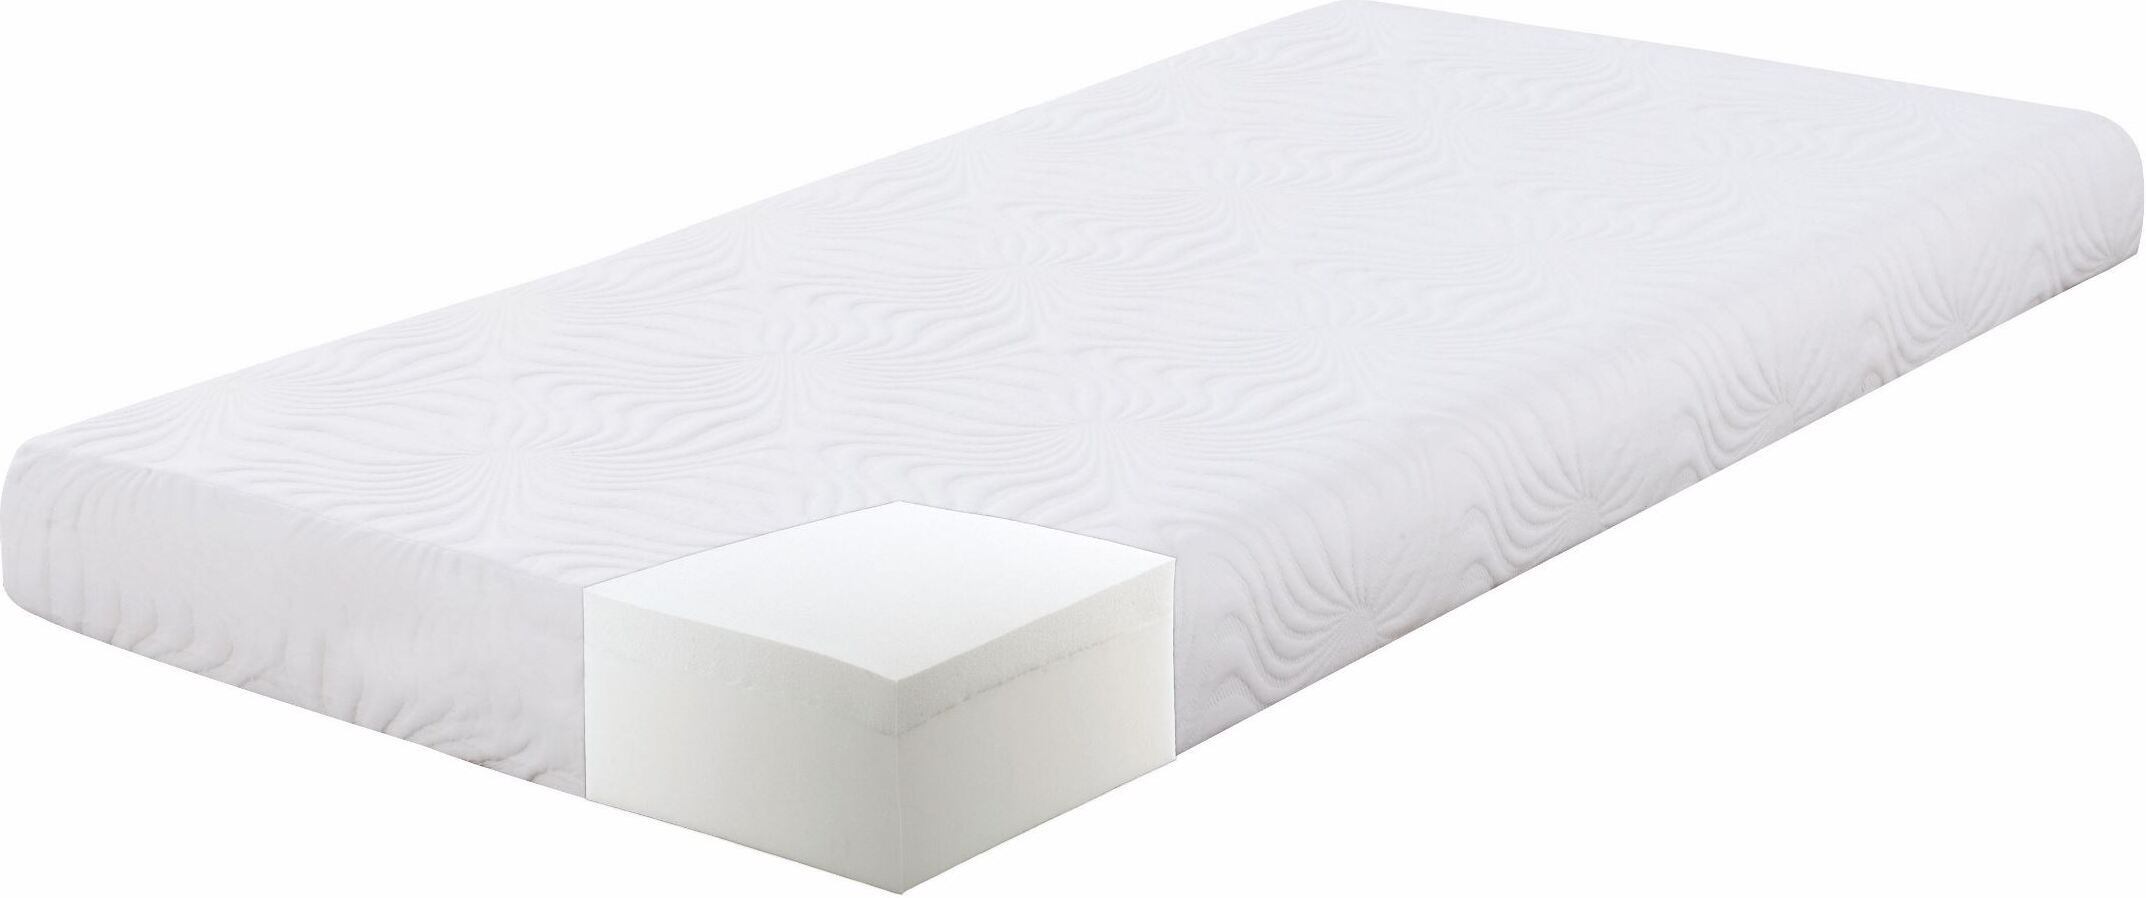 twin size foam mattress